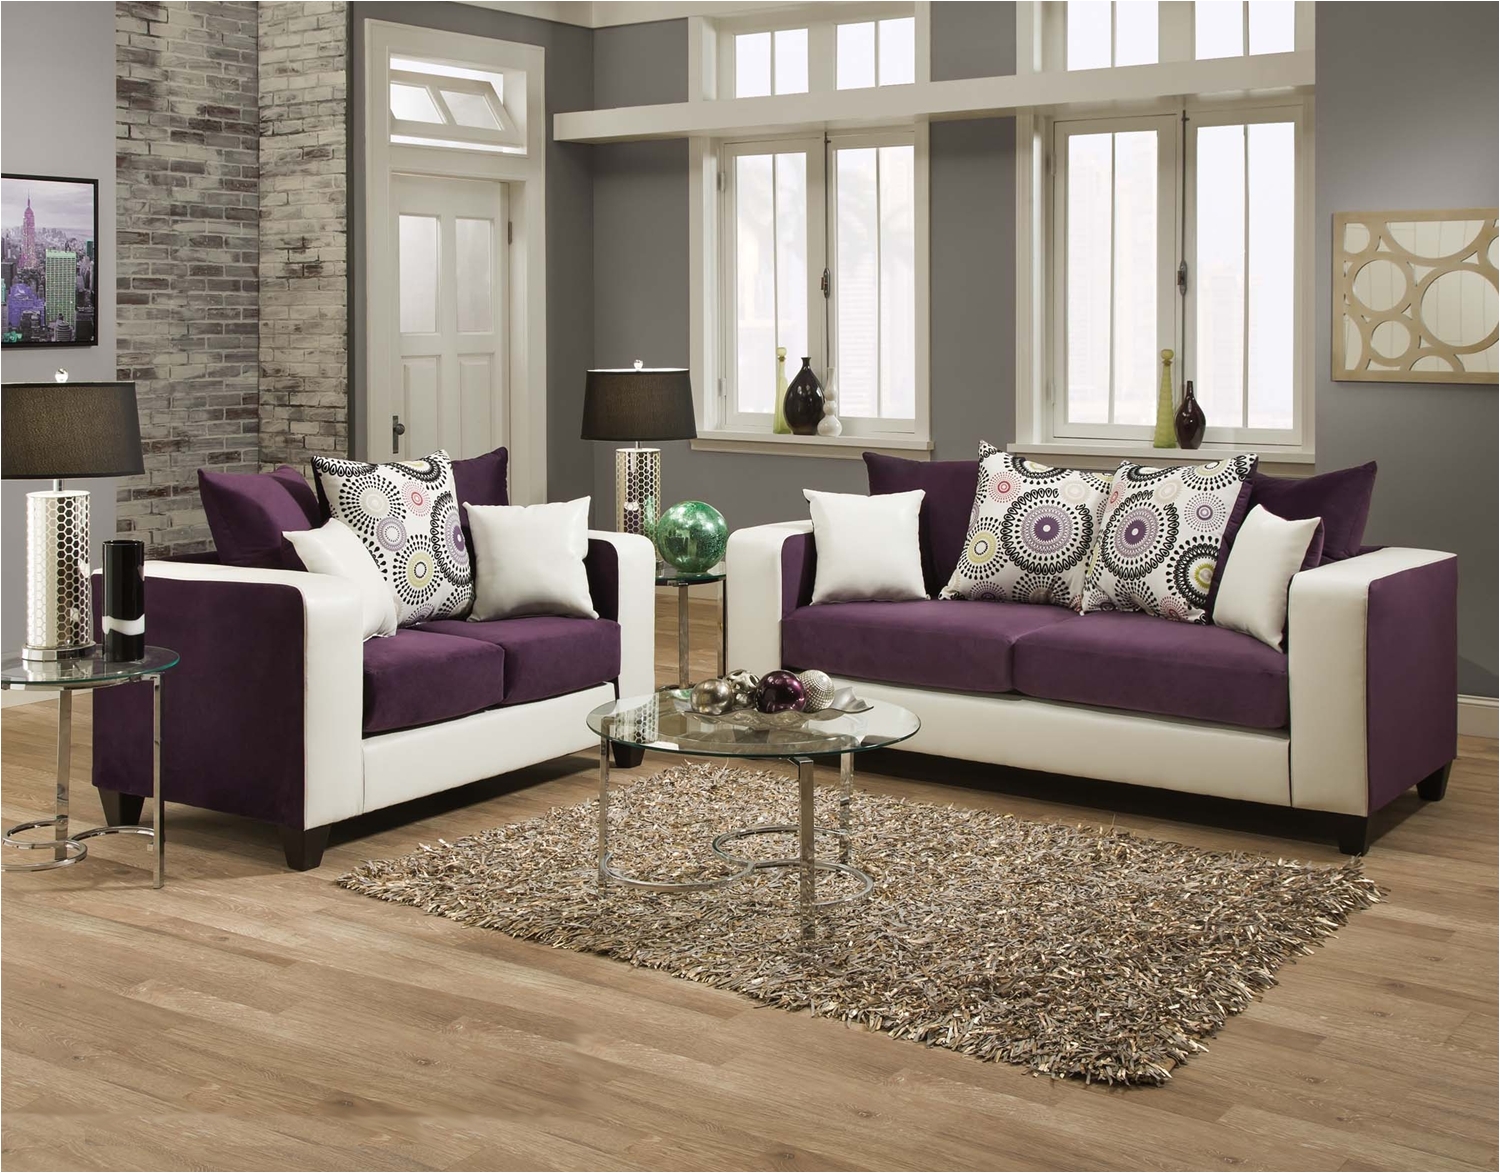 Tmart Furniture Hot Buy4120 05 Implosion Purple 4120 05 Purple 629 99 T Mart